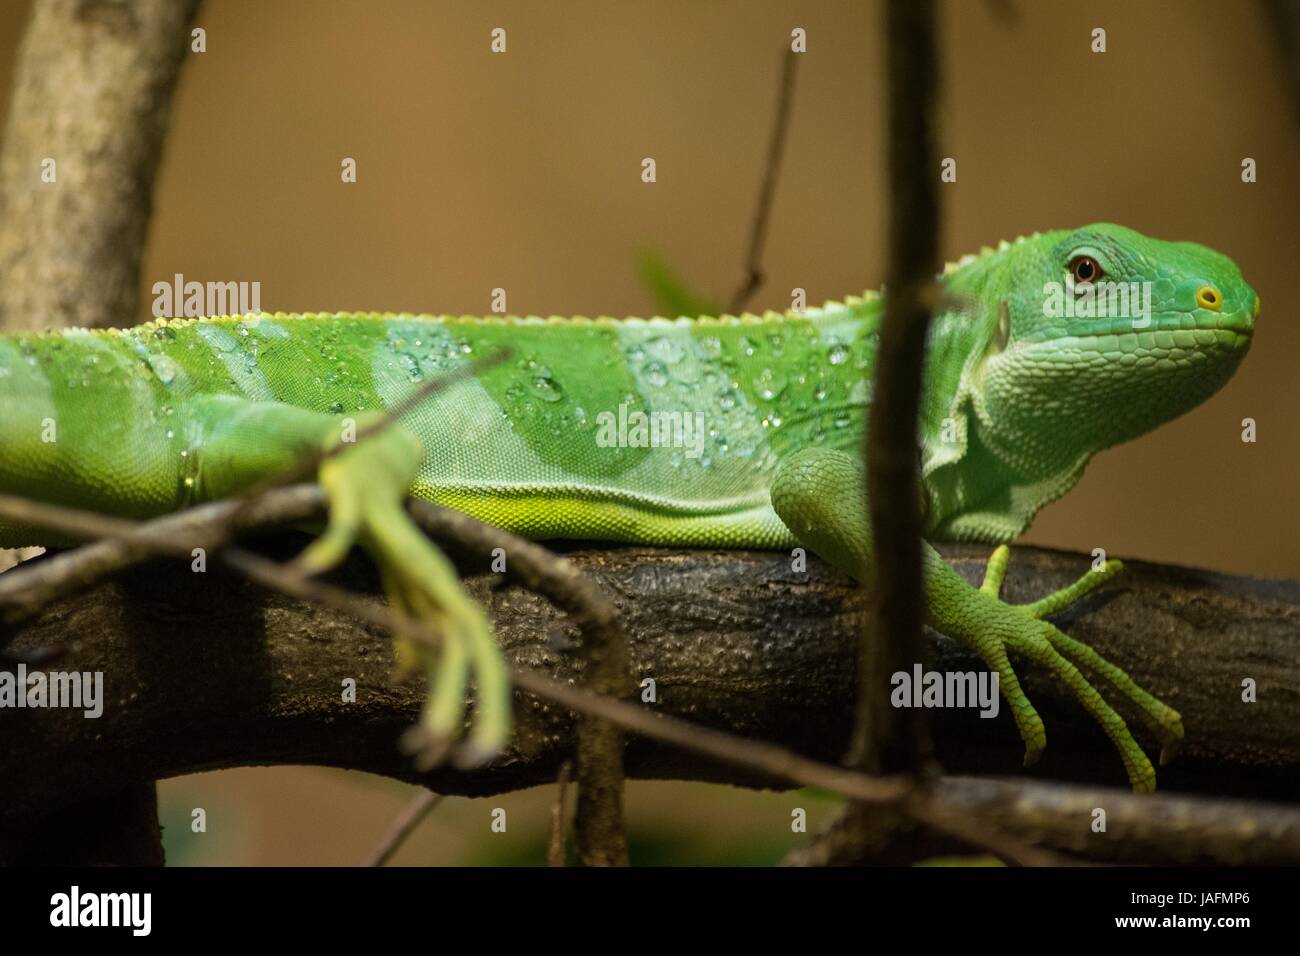 Fidschi-Leguan, Gecko, green gecko, green leguan, green iguana Stock Photo